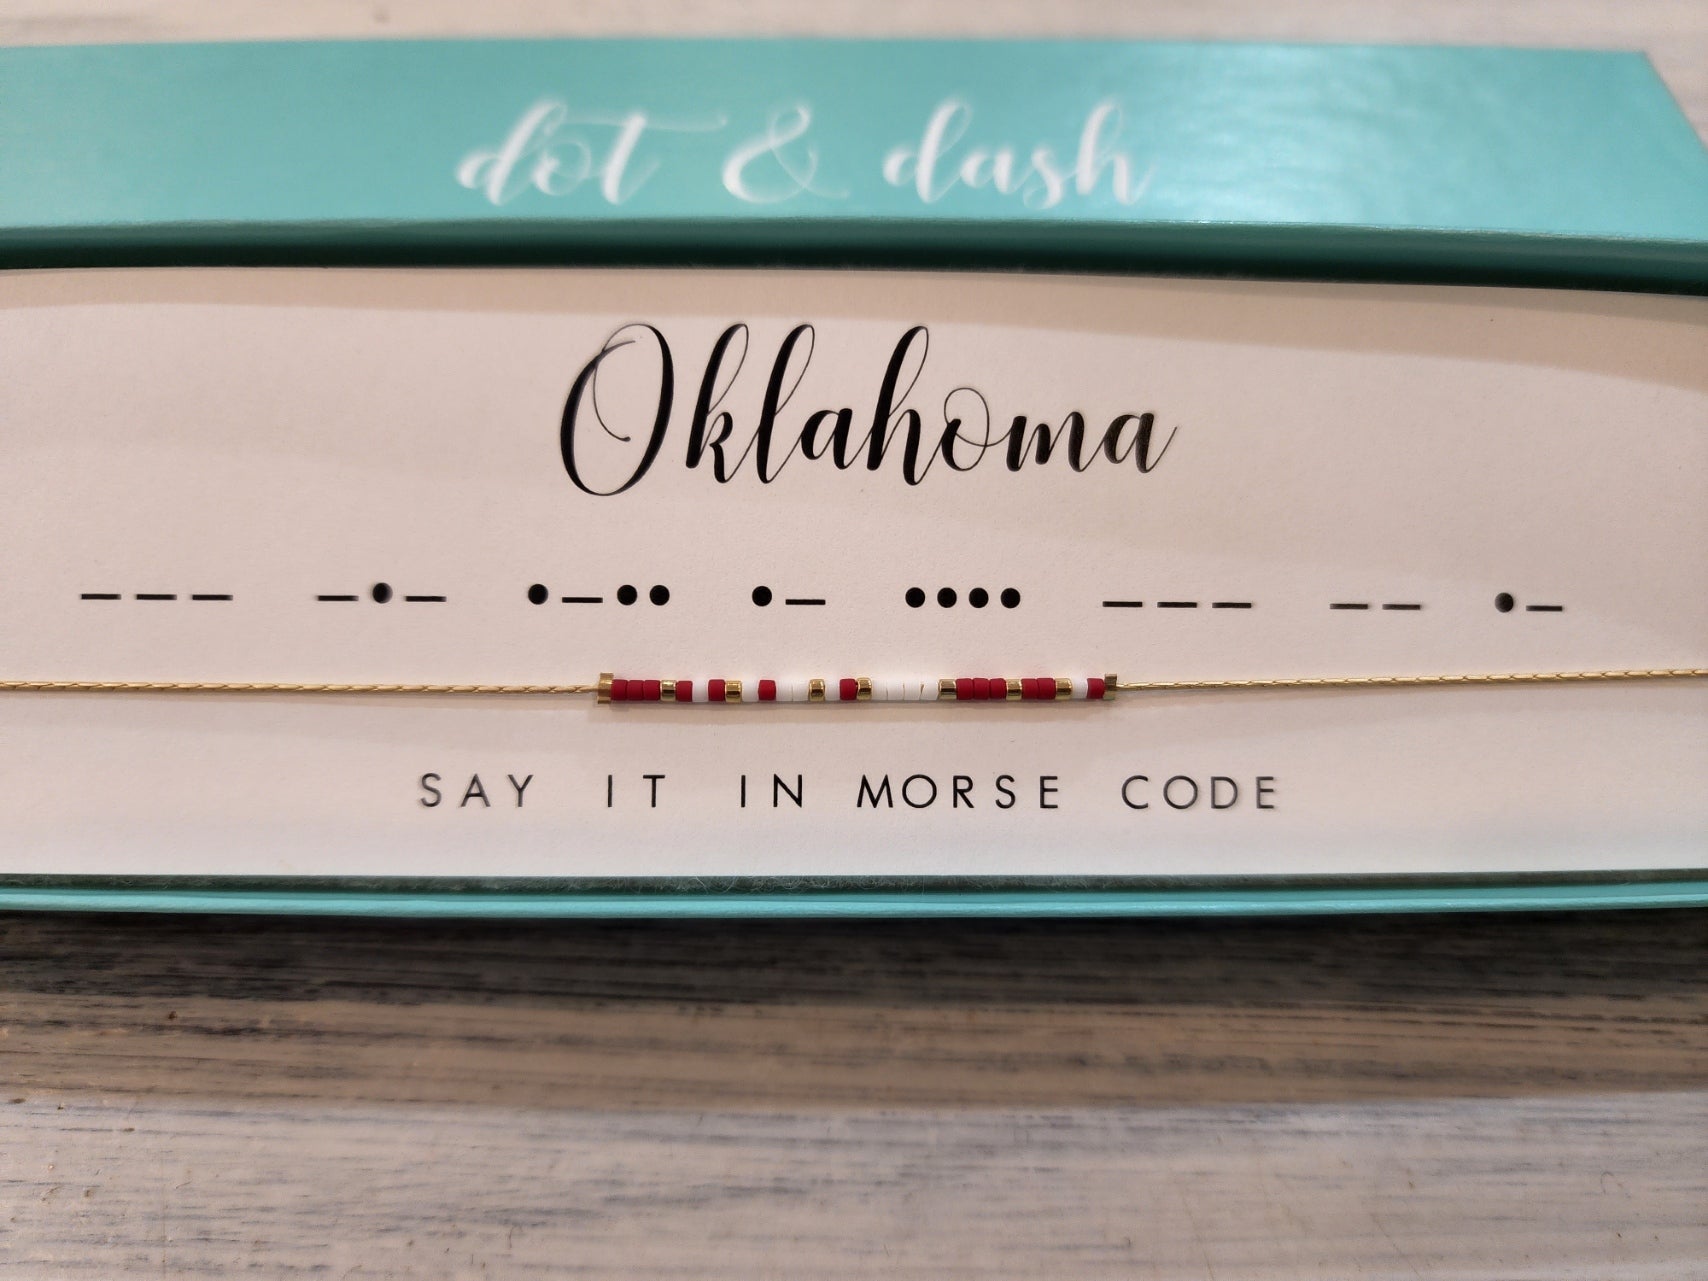 Oklahoma Dot & Dash Necklace